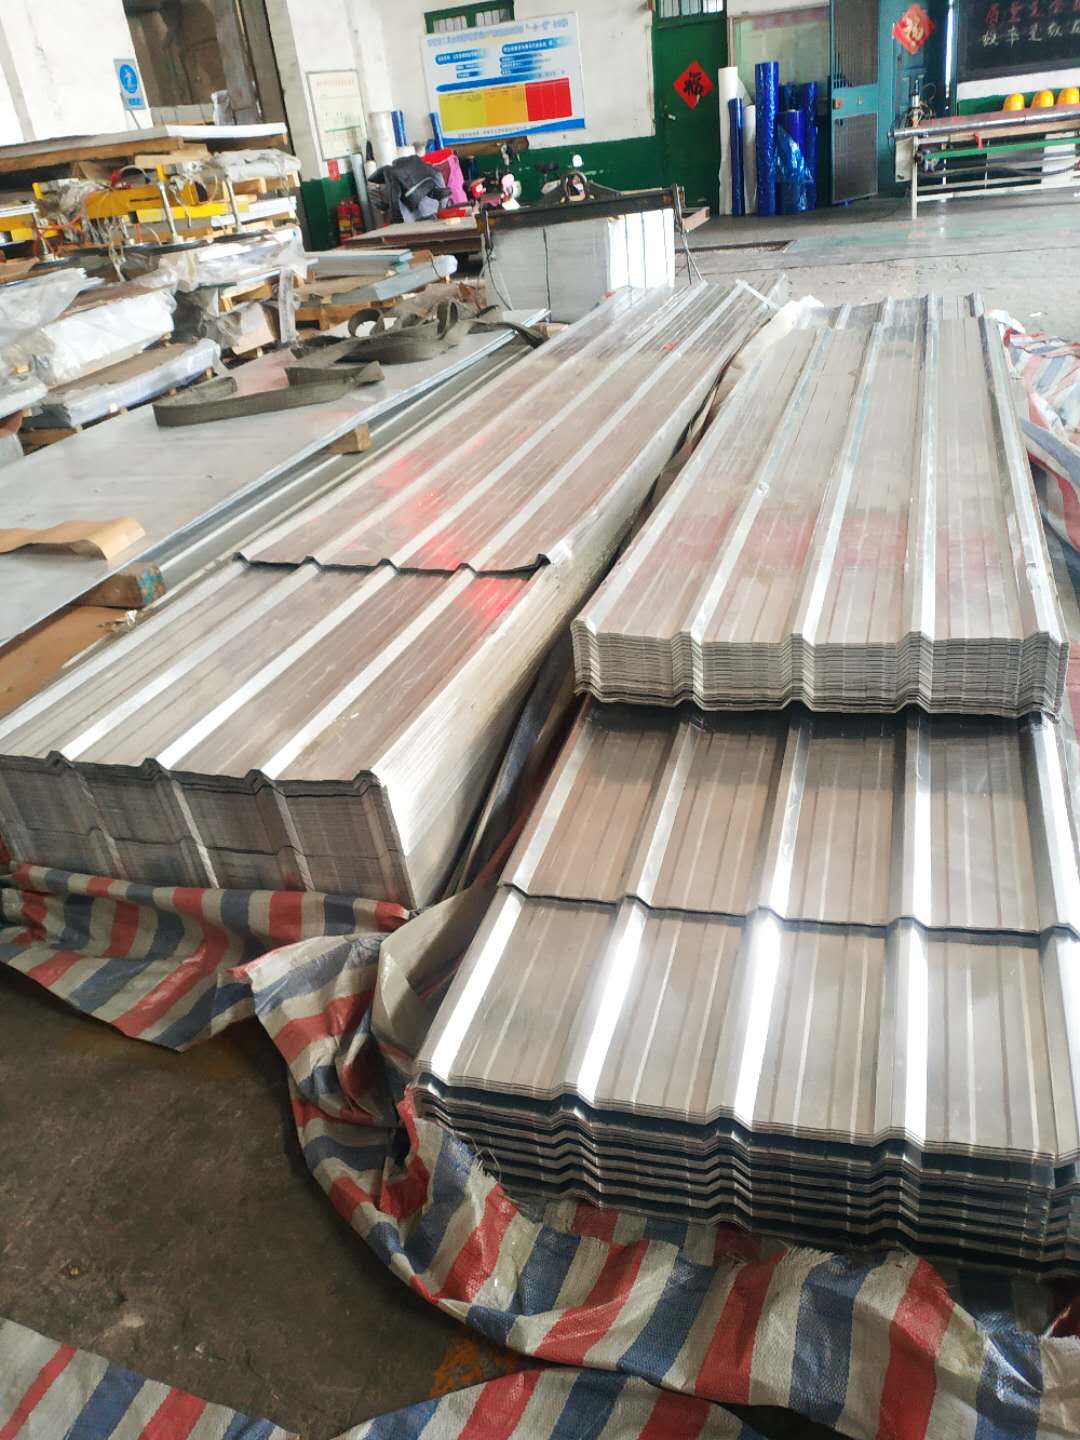 瓦楞铝板压型铝板波形铝板或铝瓦